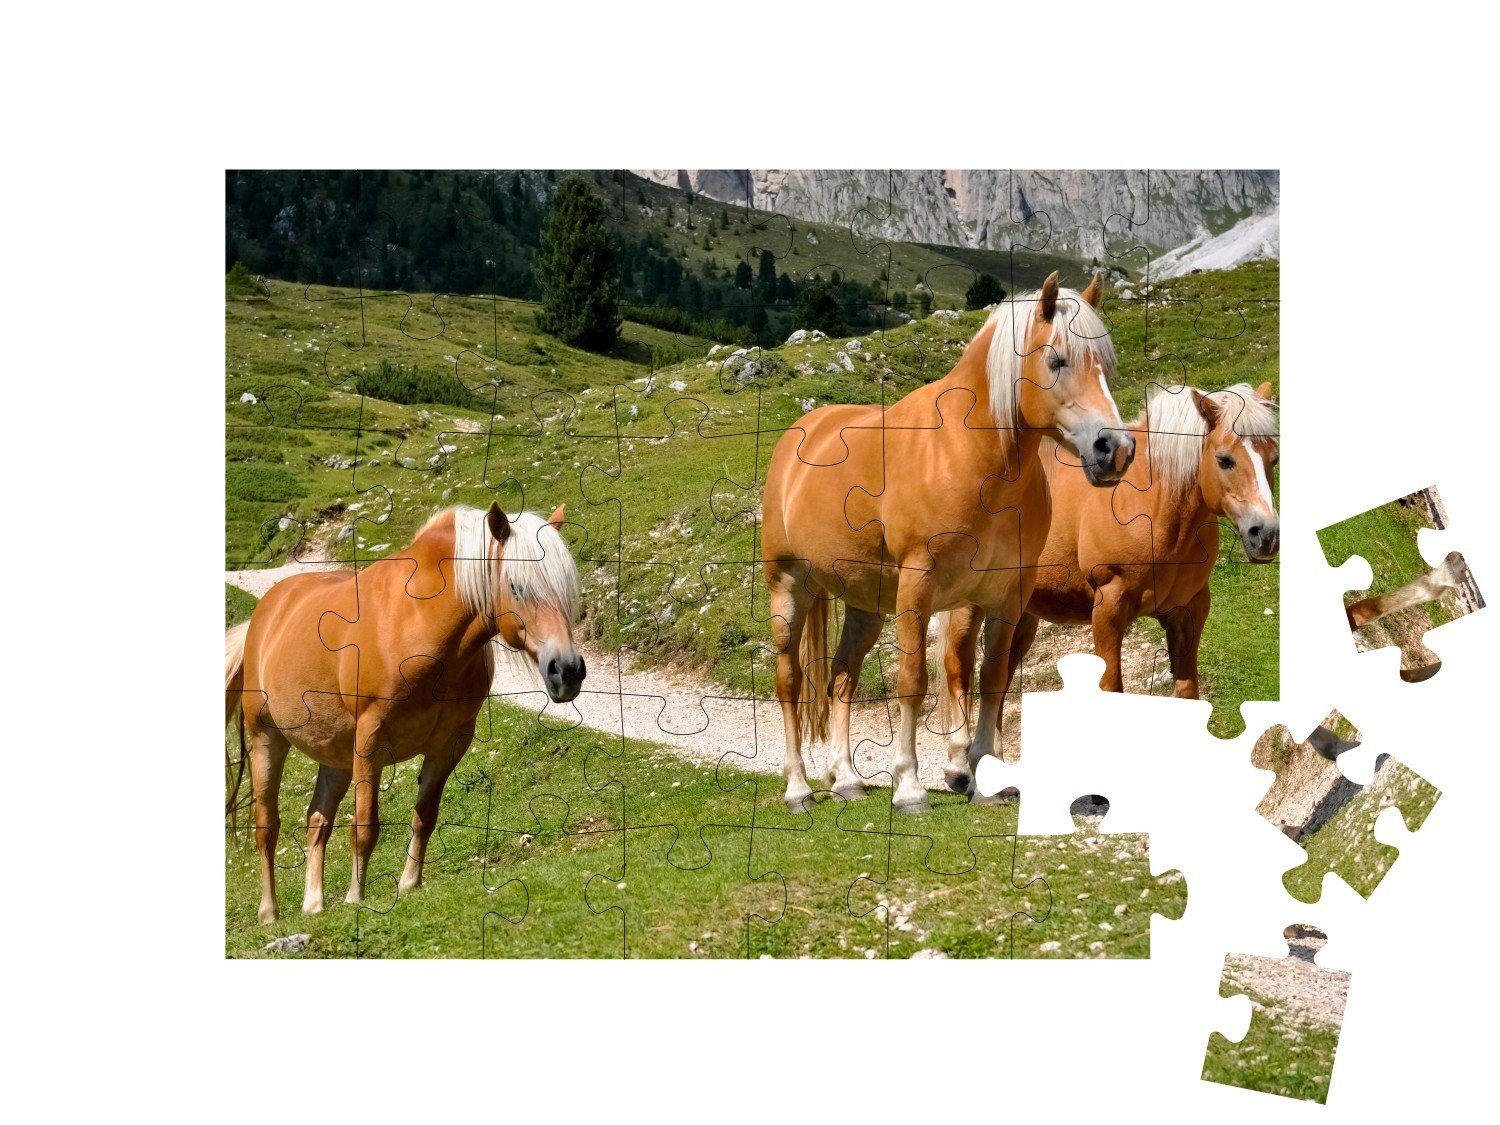 puzzleYOU Puzzle Pferde Puzzleteile, einer 48 Haflingerpferde puzzleYOU-Kollektionen Südtirol, Alm, Haflinger Pferde, auf